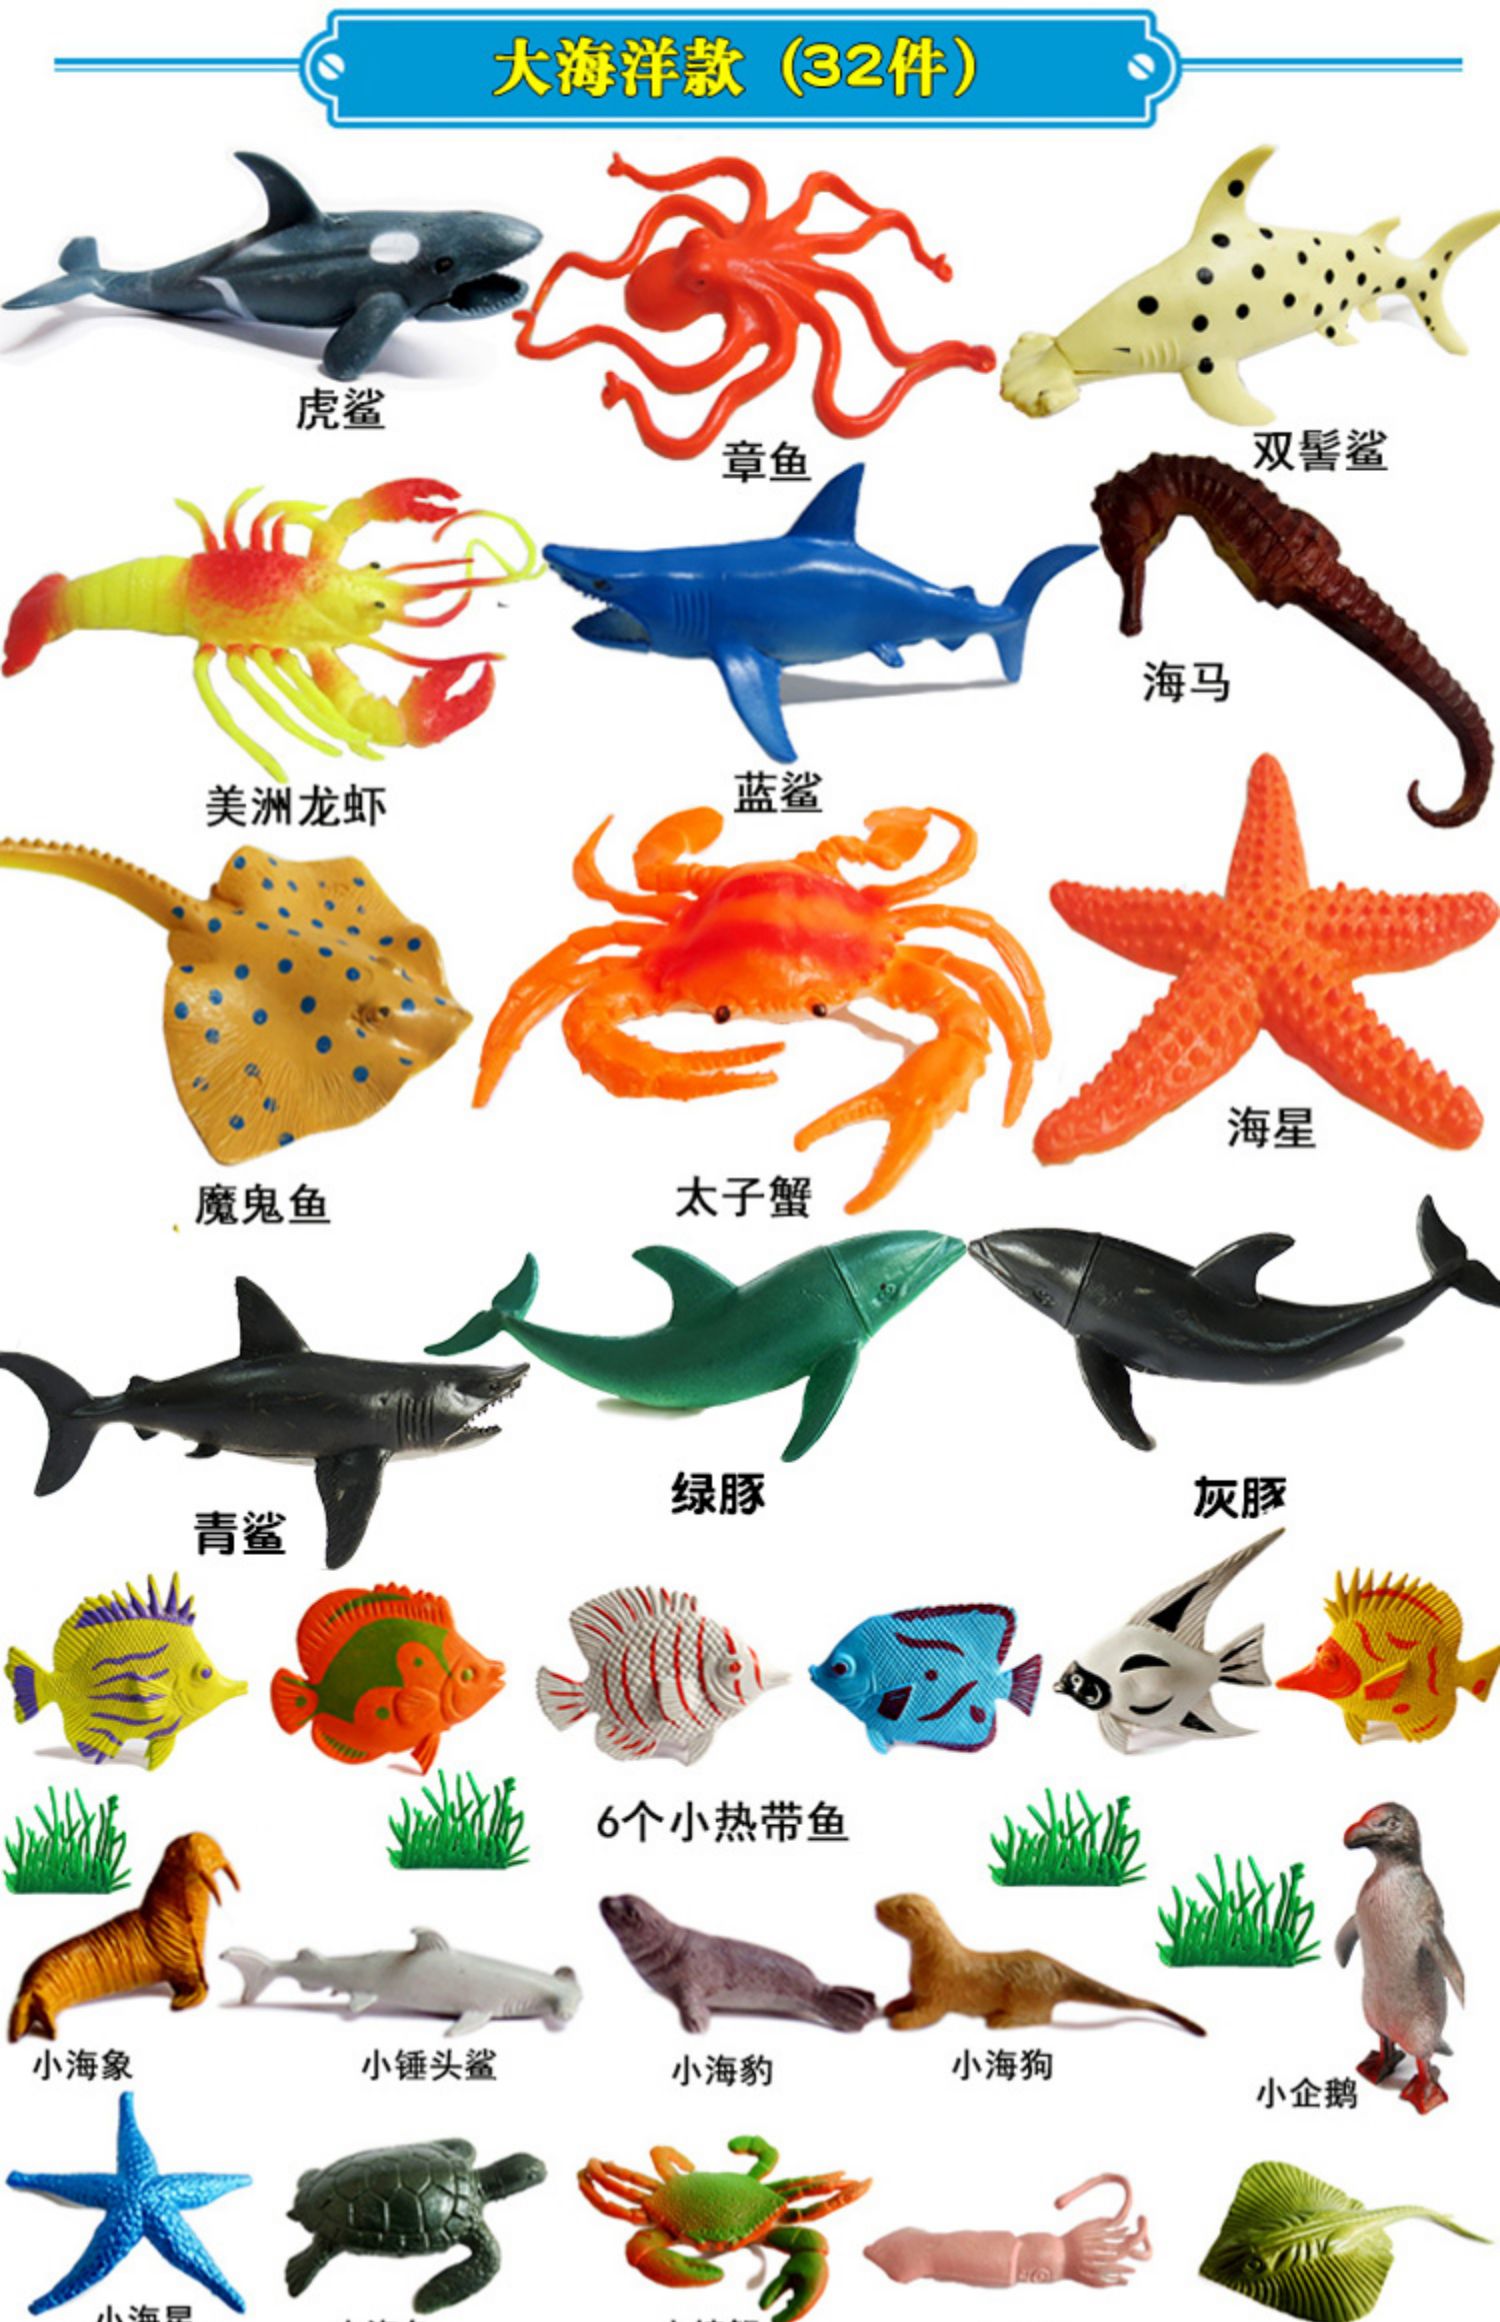 仿真软胶静态海洋动物模型儿童认知玩具河豚海豚鲨鱼热带鱼限量促小